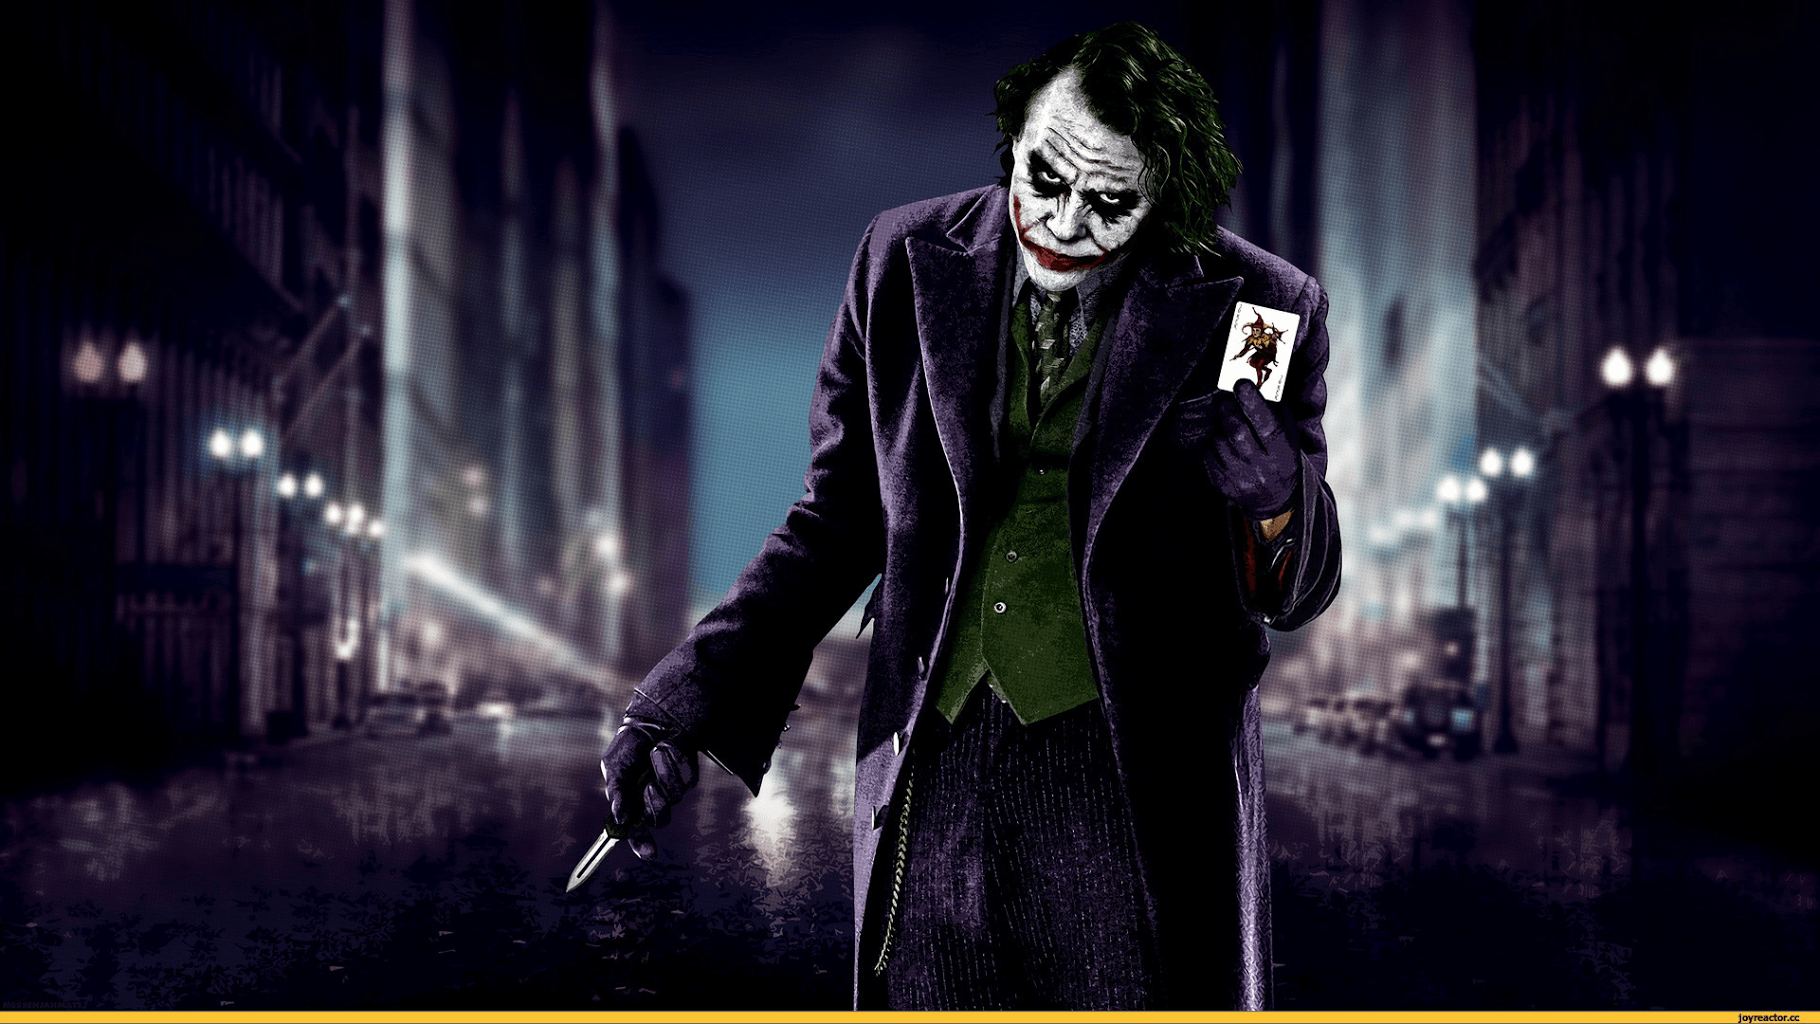 Dark Knight Joker 4k Wallpaper For Android : Joker Hd 4k Dark Knight ...